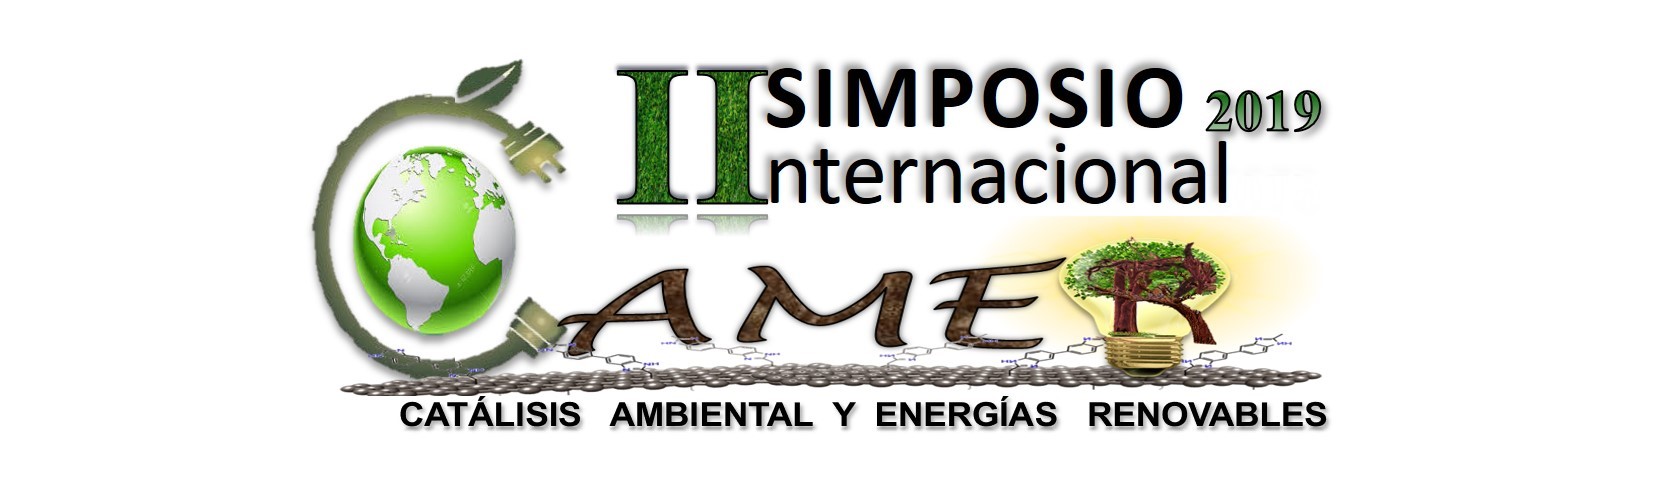 II Simposio Internacional de Catálisis Ambiental y Energías Renovables